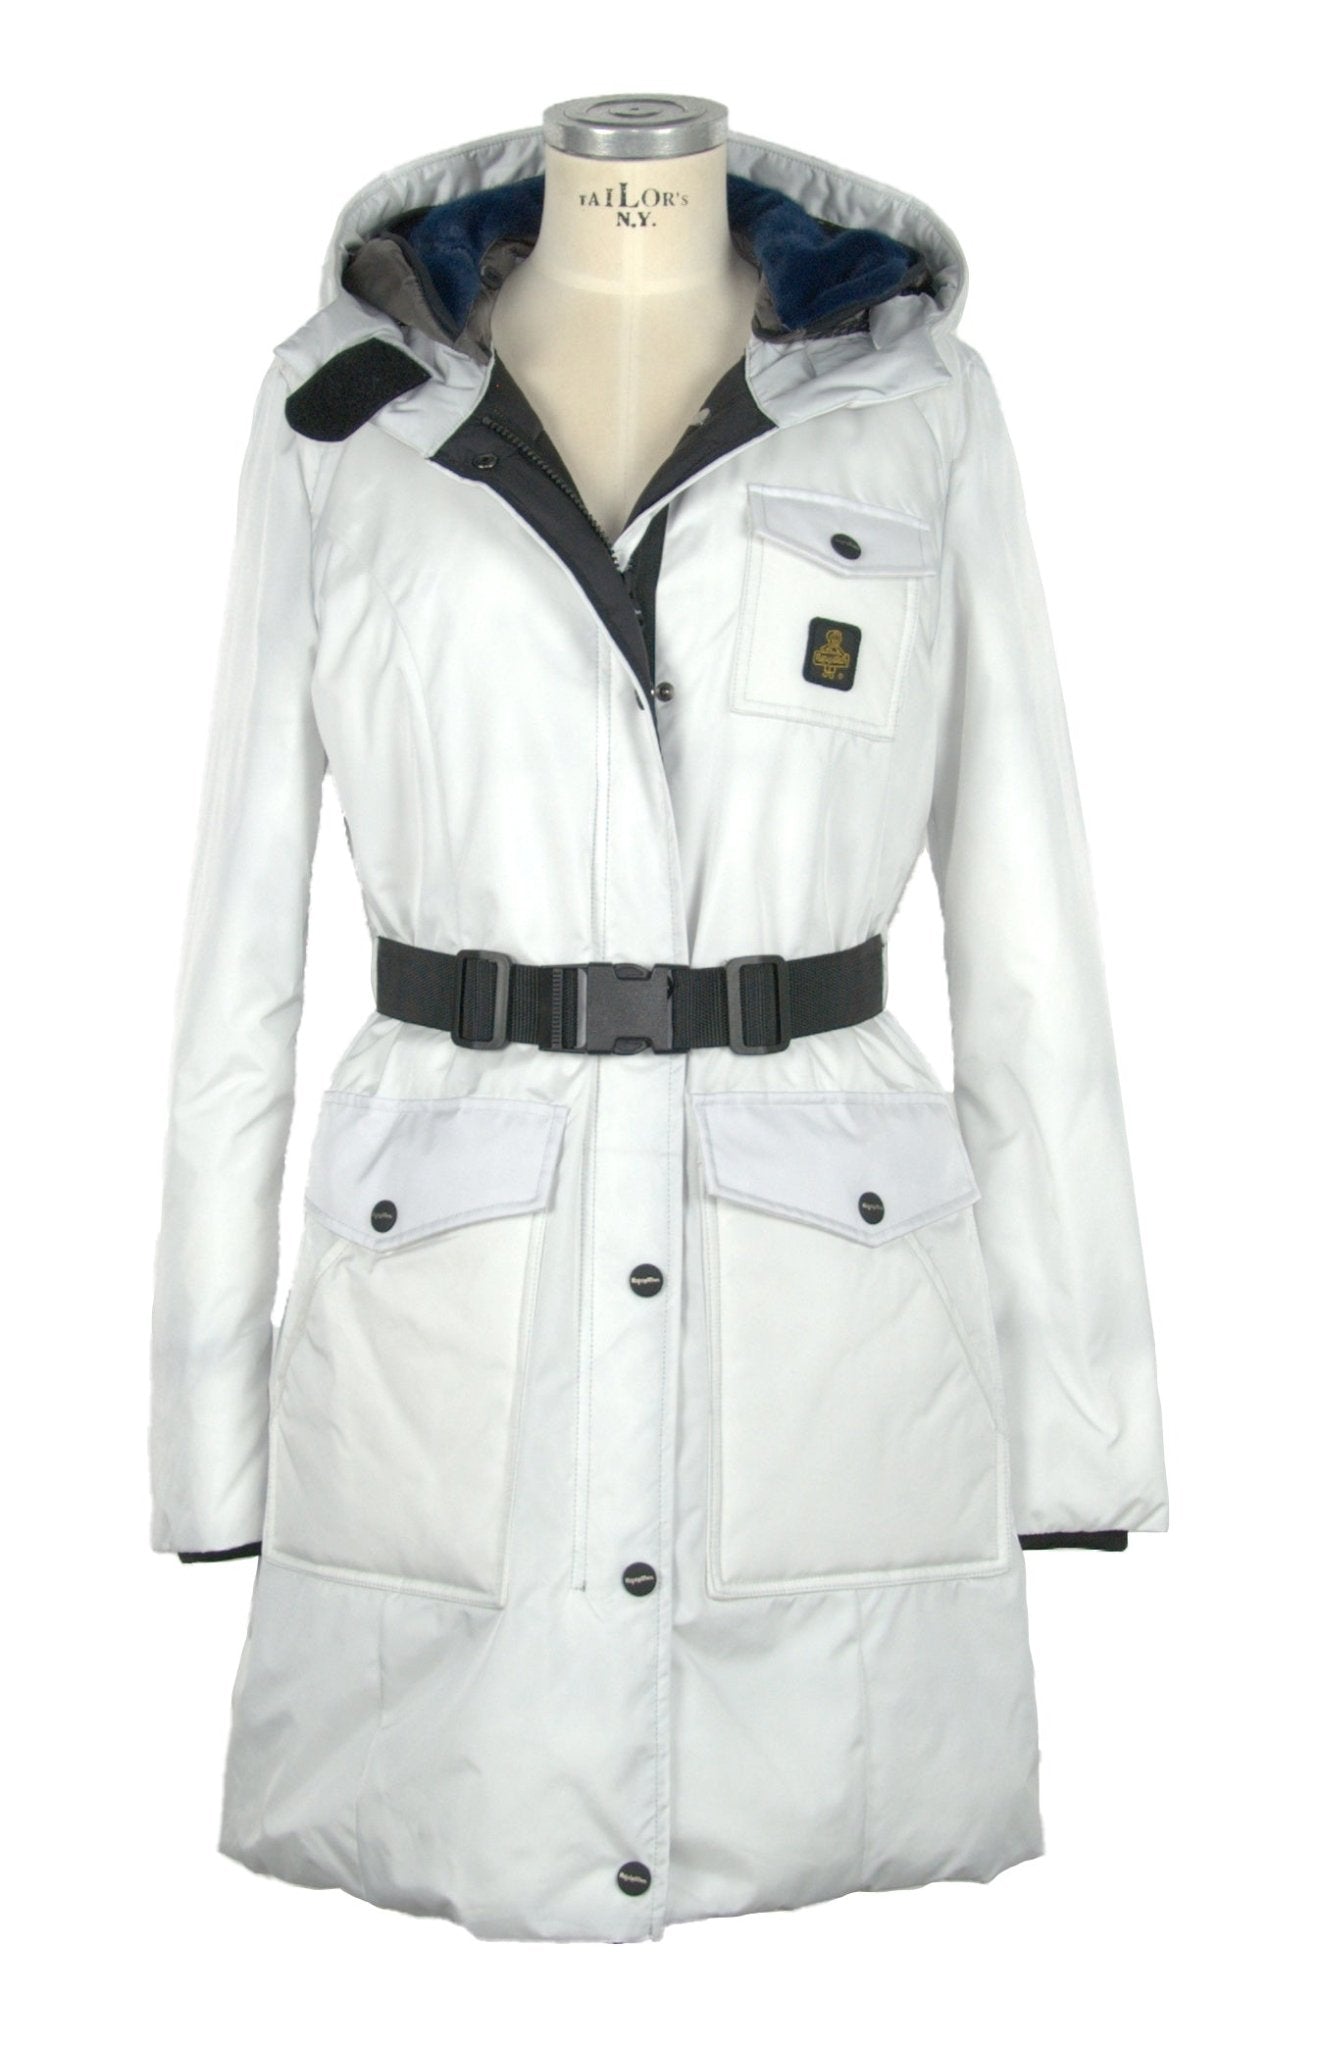 Refrigiwear White Polyamide Jackets & Coat - Fizigo